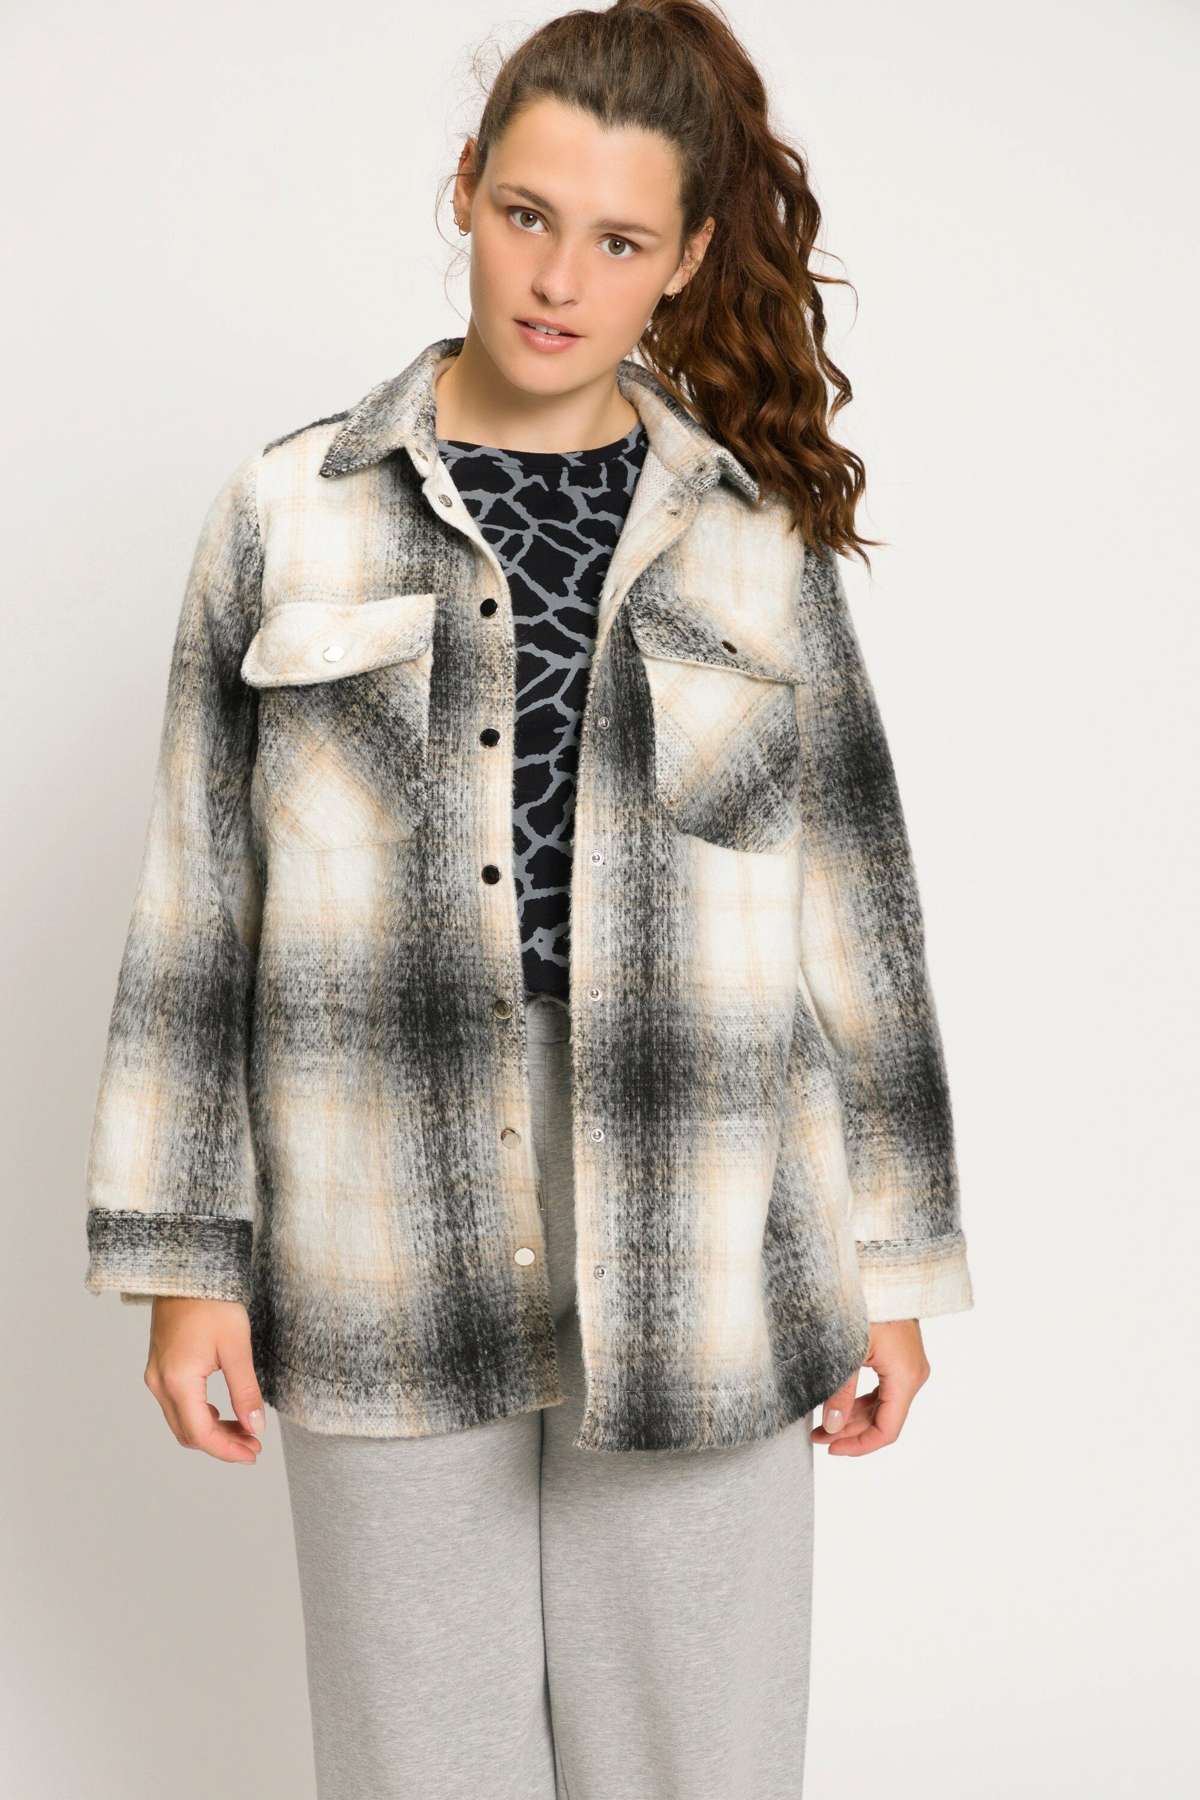 Пиджак, пиджак, куртка-рубашка, широкий фасон, рубашка с воротником в клетку, длинный рукав